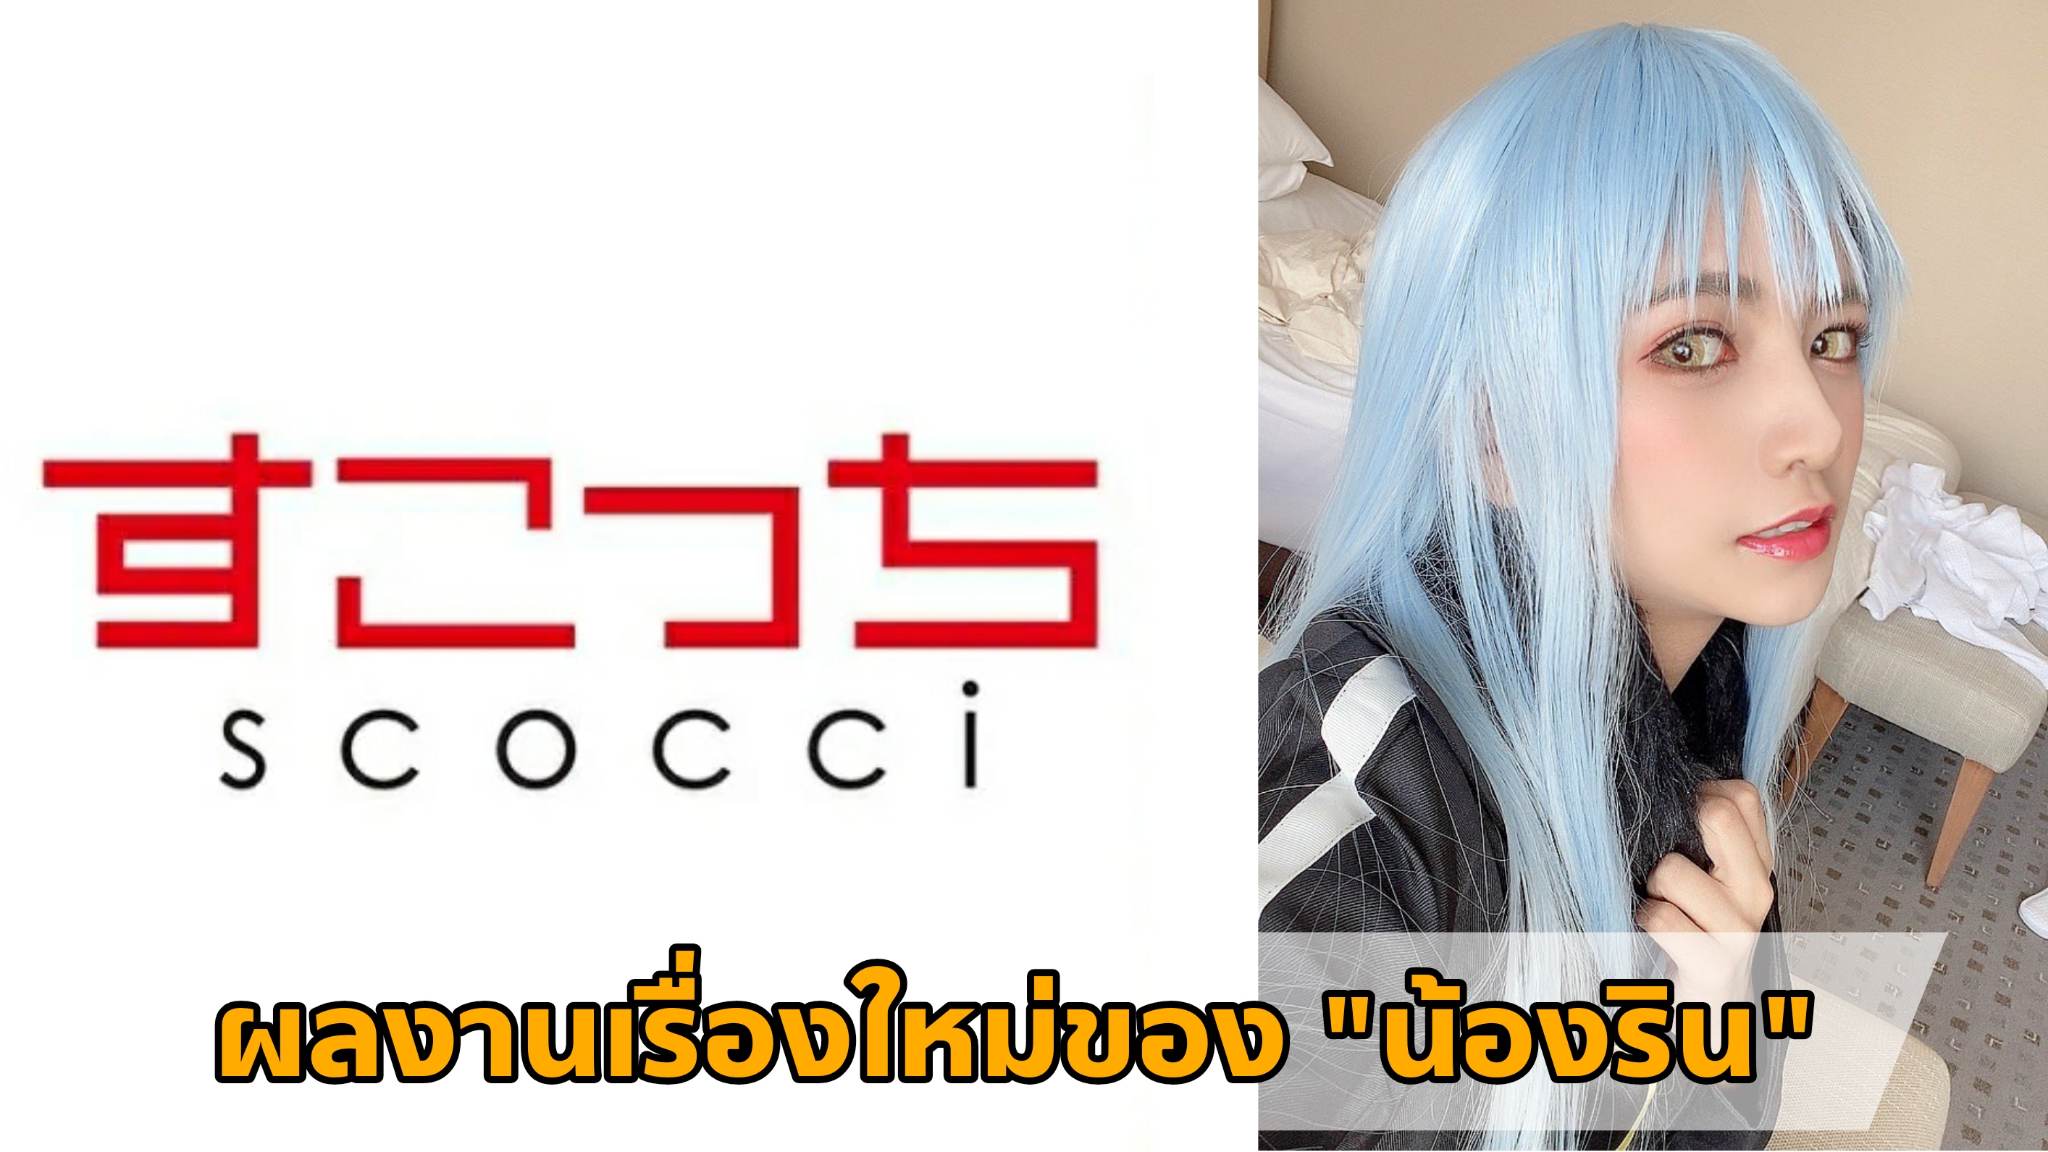 [SCOH-105] ผลงานเรื่องใหม่ของ "น้องริน" (Rin Miyazaki) Cosplay เป็น "ท่านริมุรุ" 9